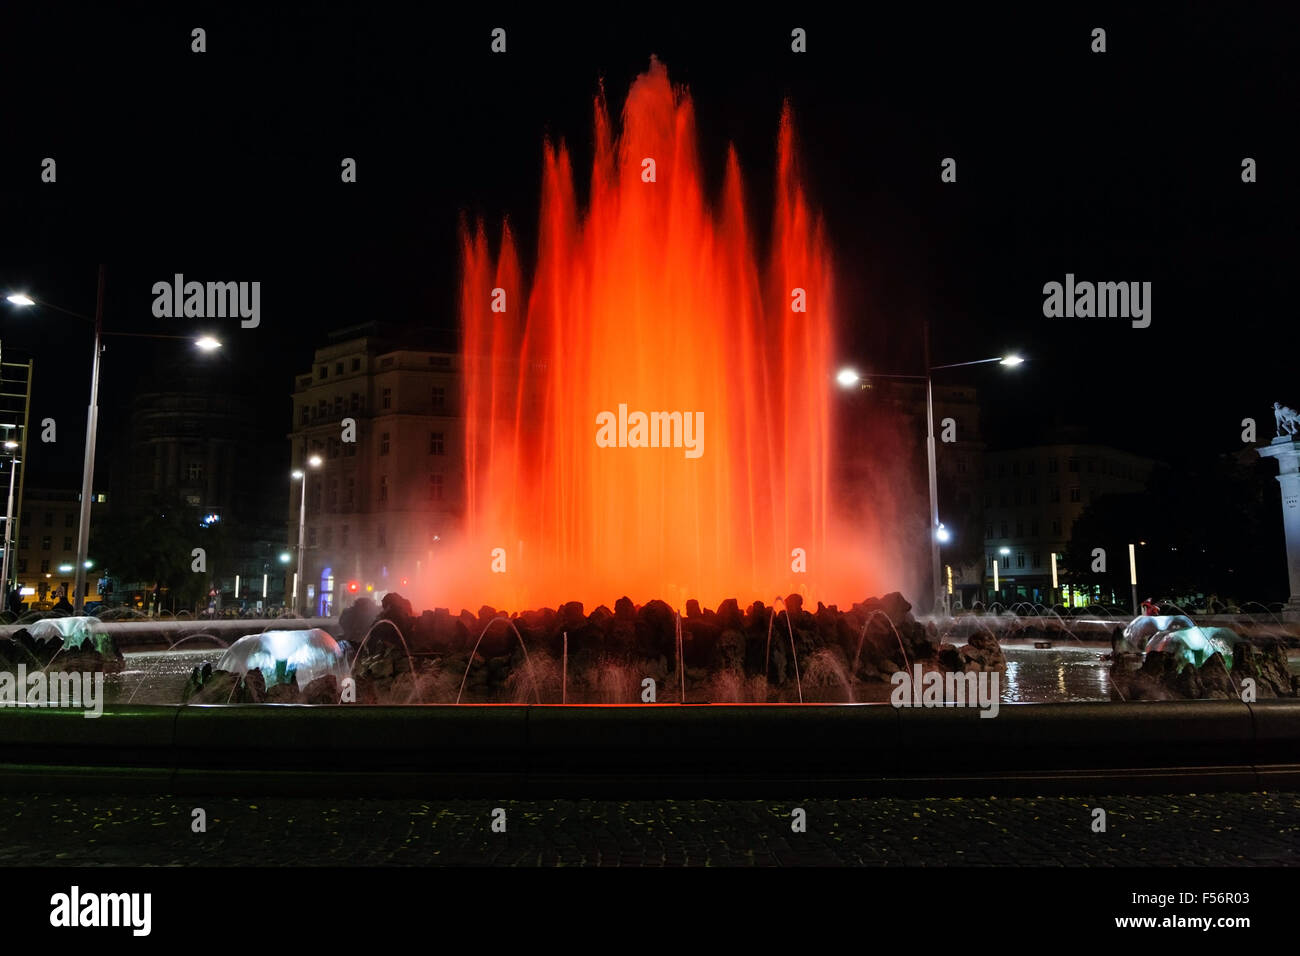 Déplacement à Vienne ville - rouge lumineux Hochstrahlbrunnen fontaine sur la place, Schwarzenbergplatz,Vienne Autriche Banque D'Images